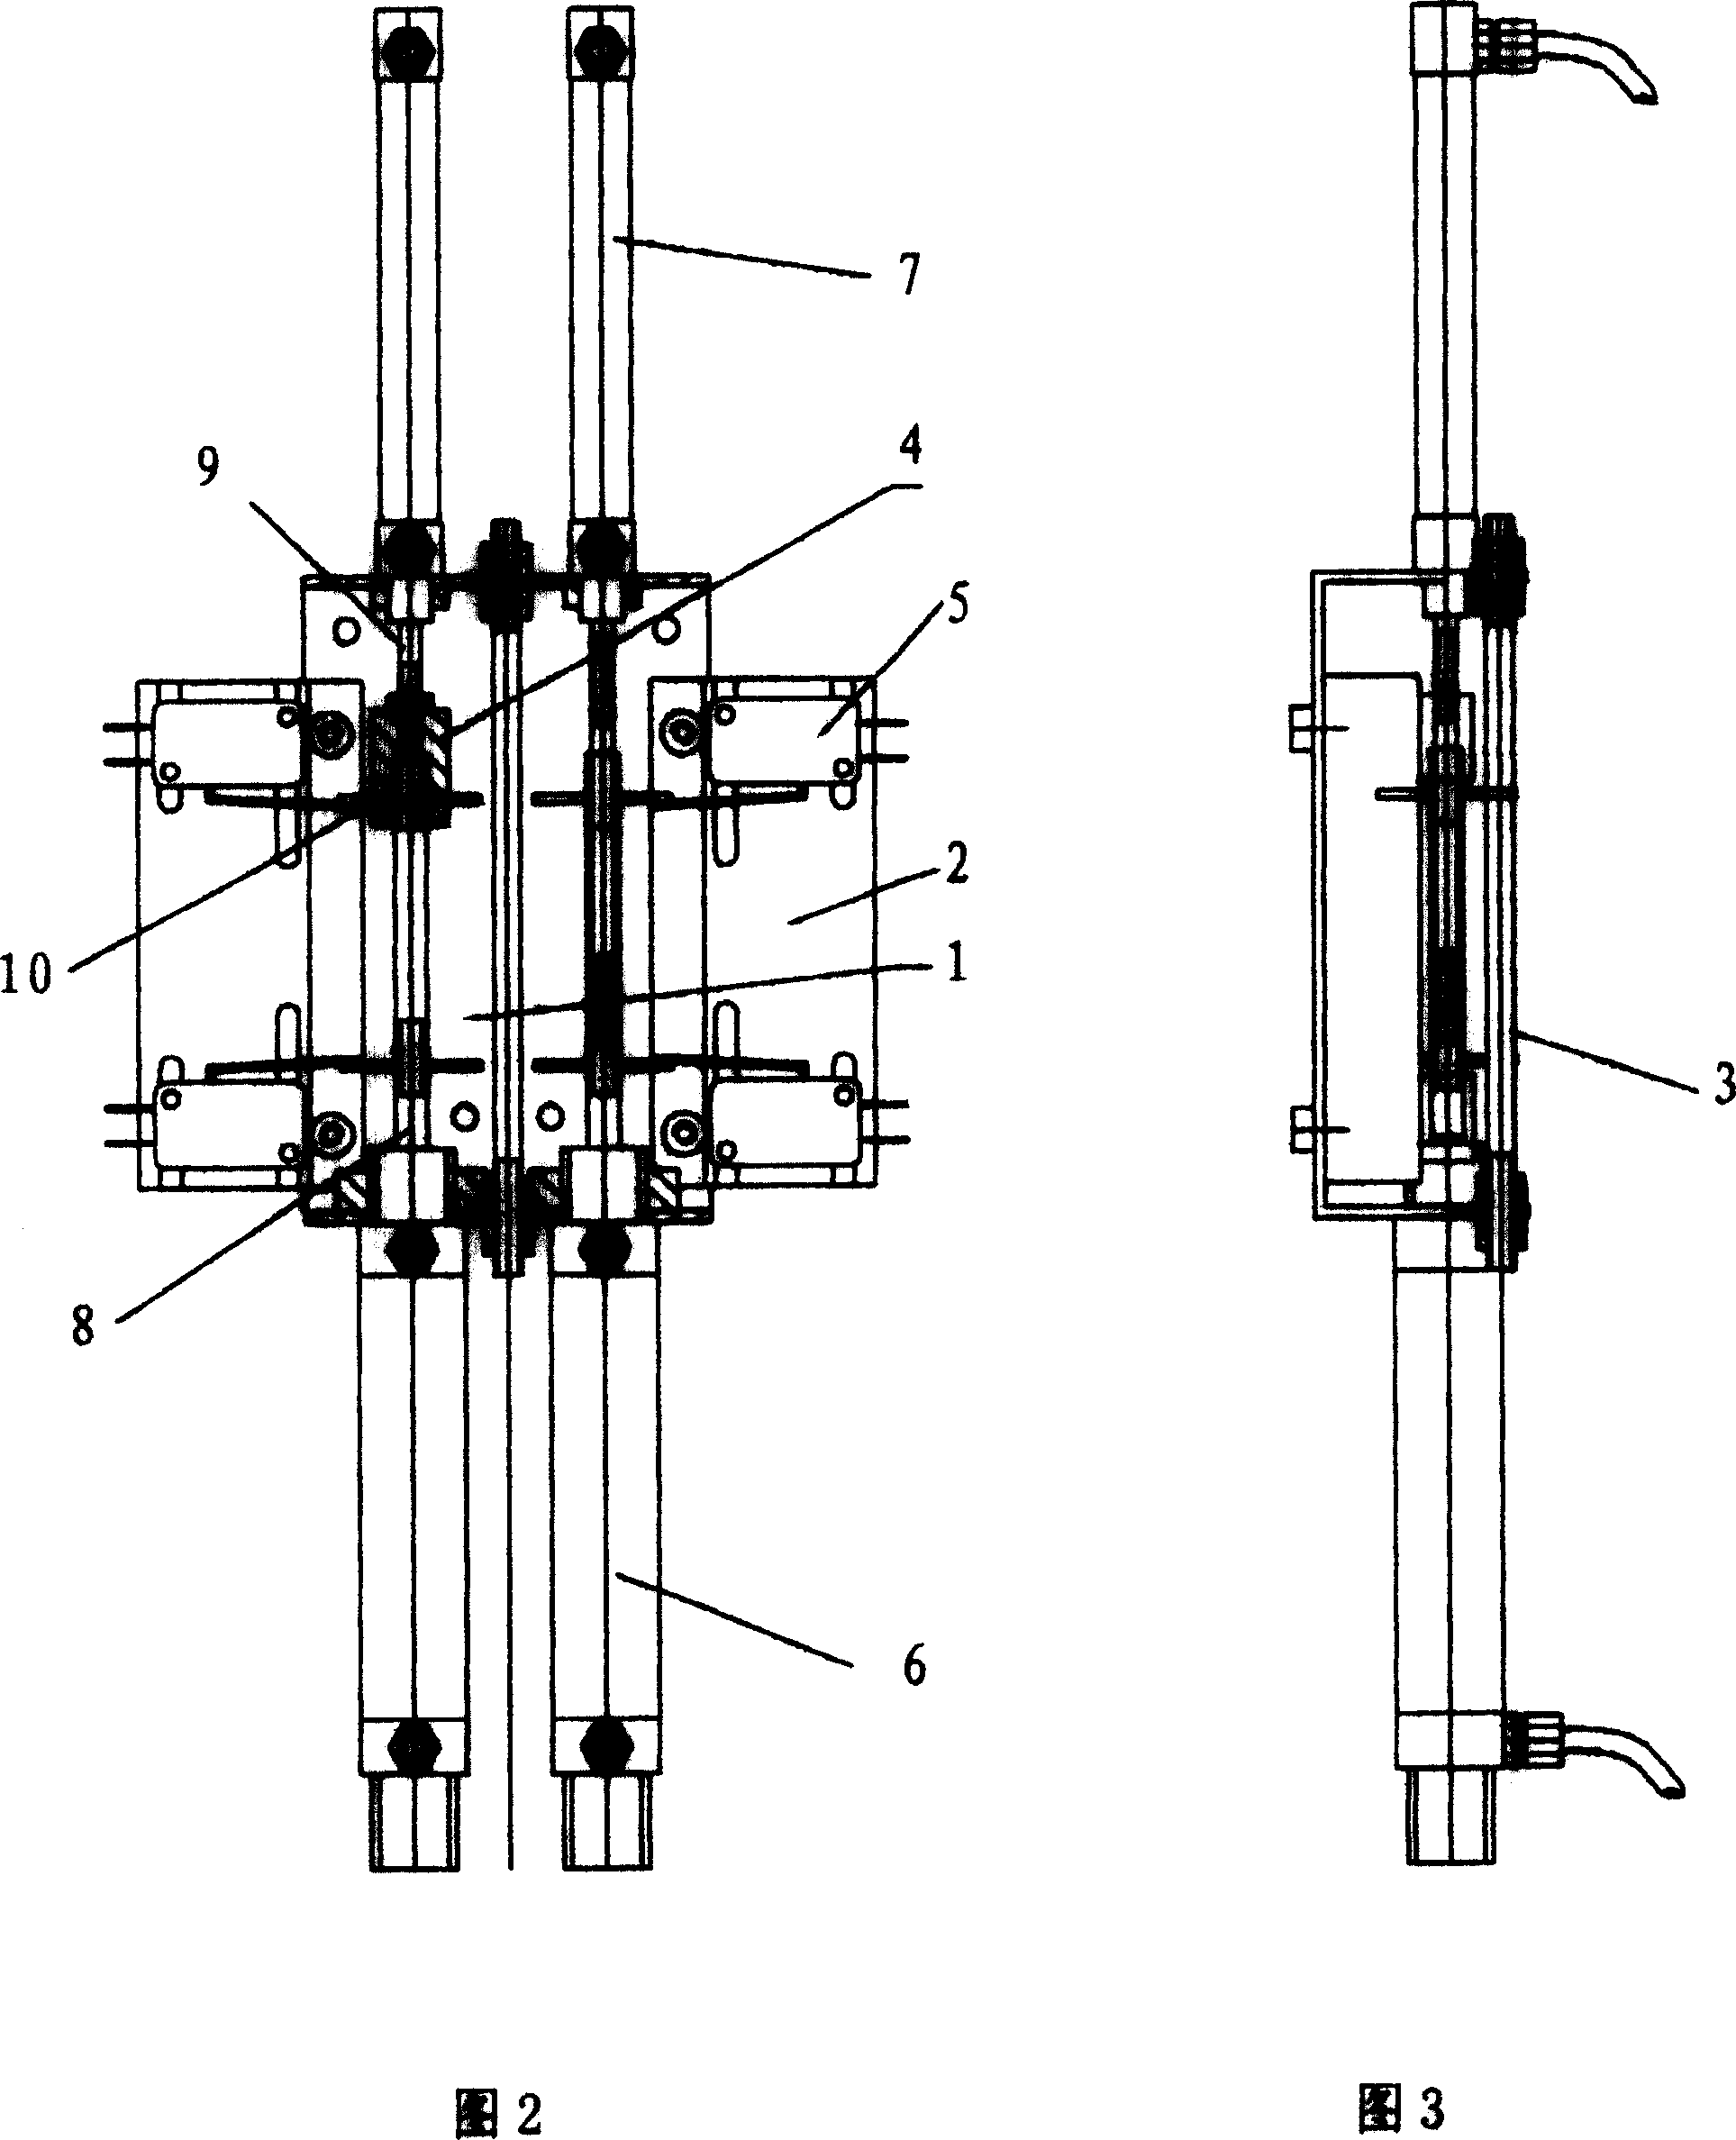 Composite cylinder pressurizing ink-joiner